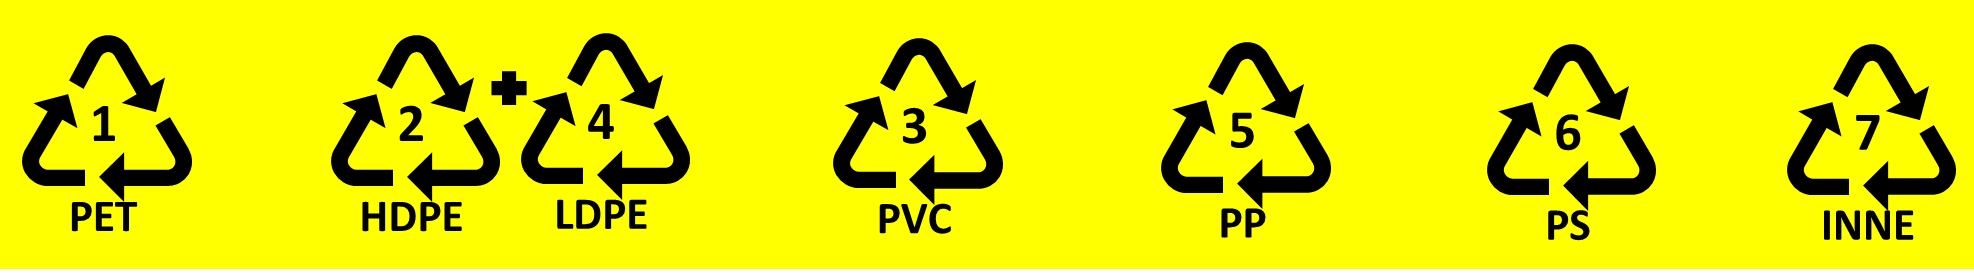 symbole oznaczające odpady z tworzyw sztucznych